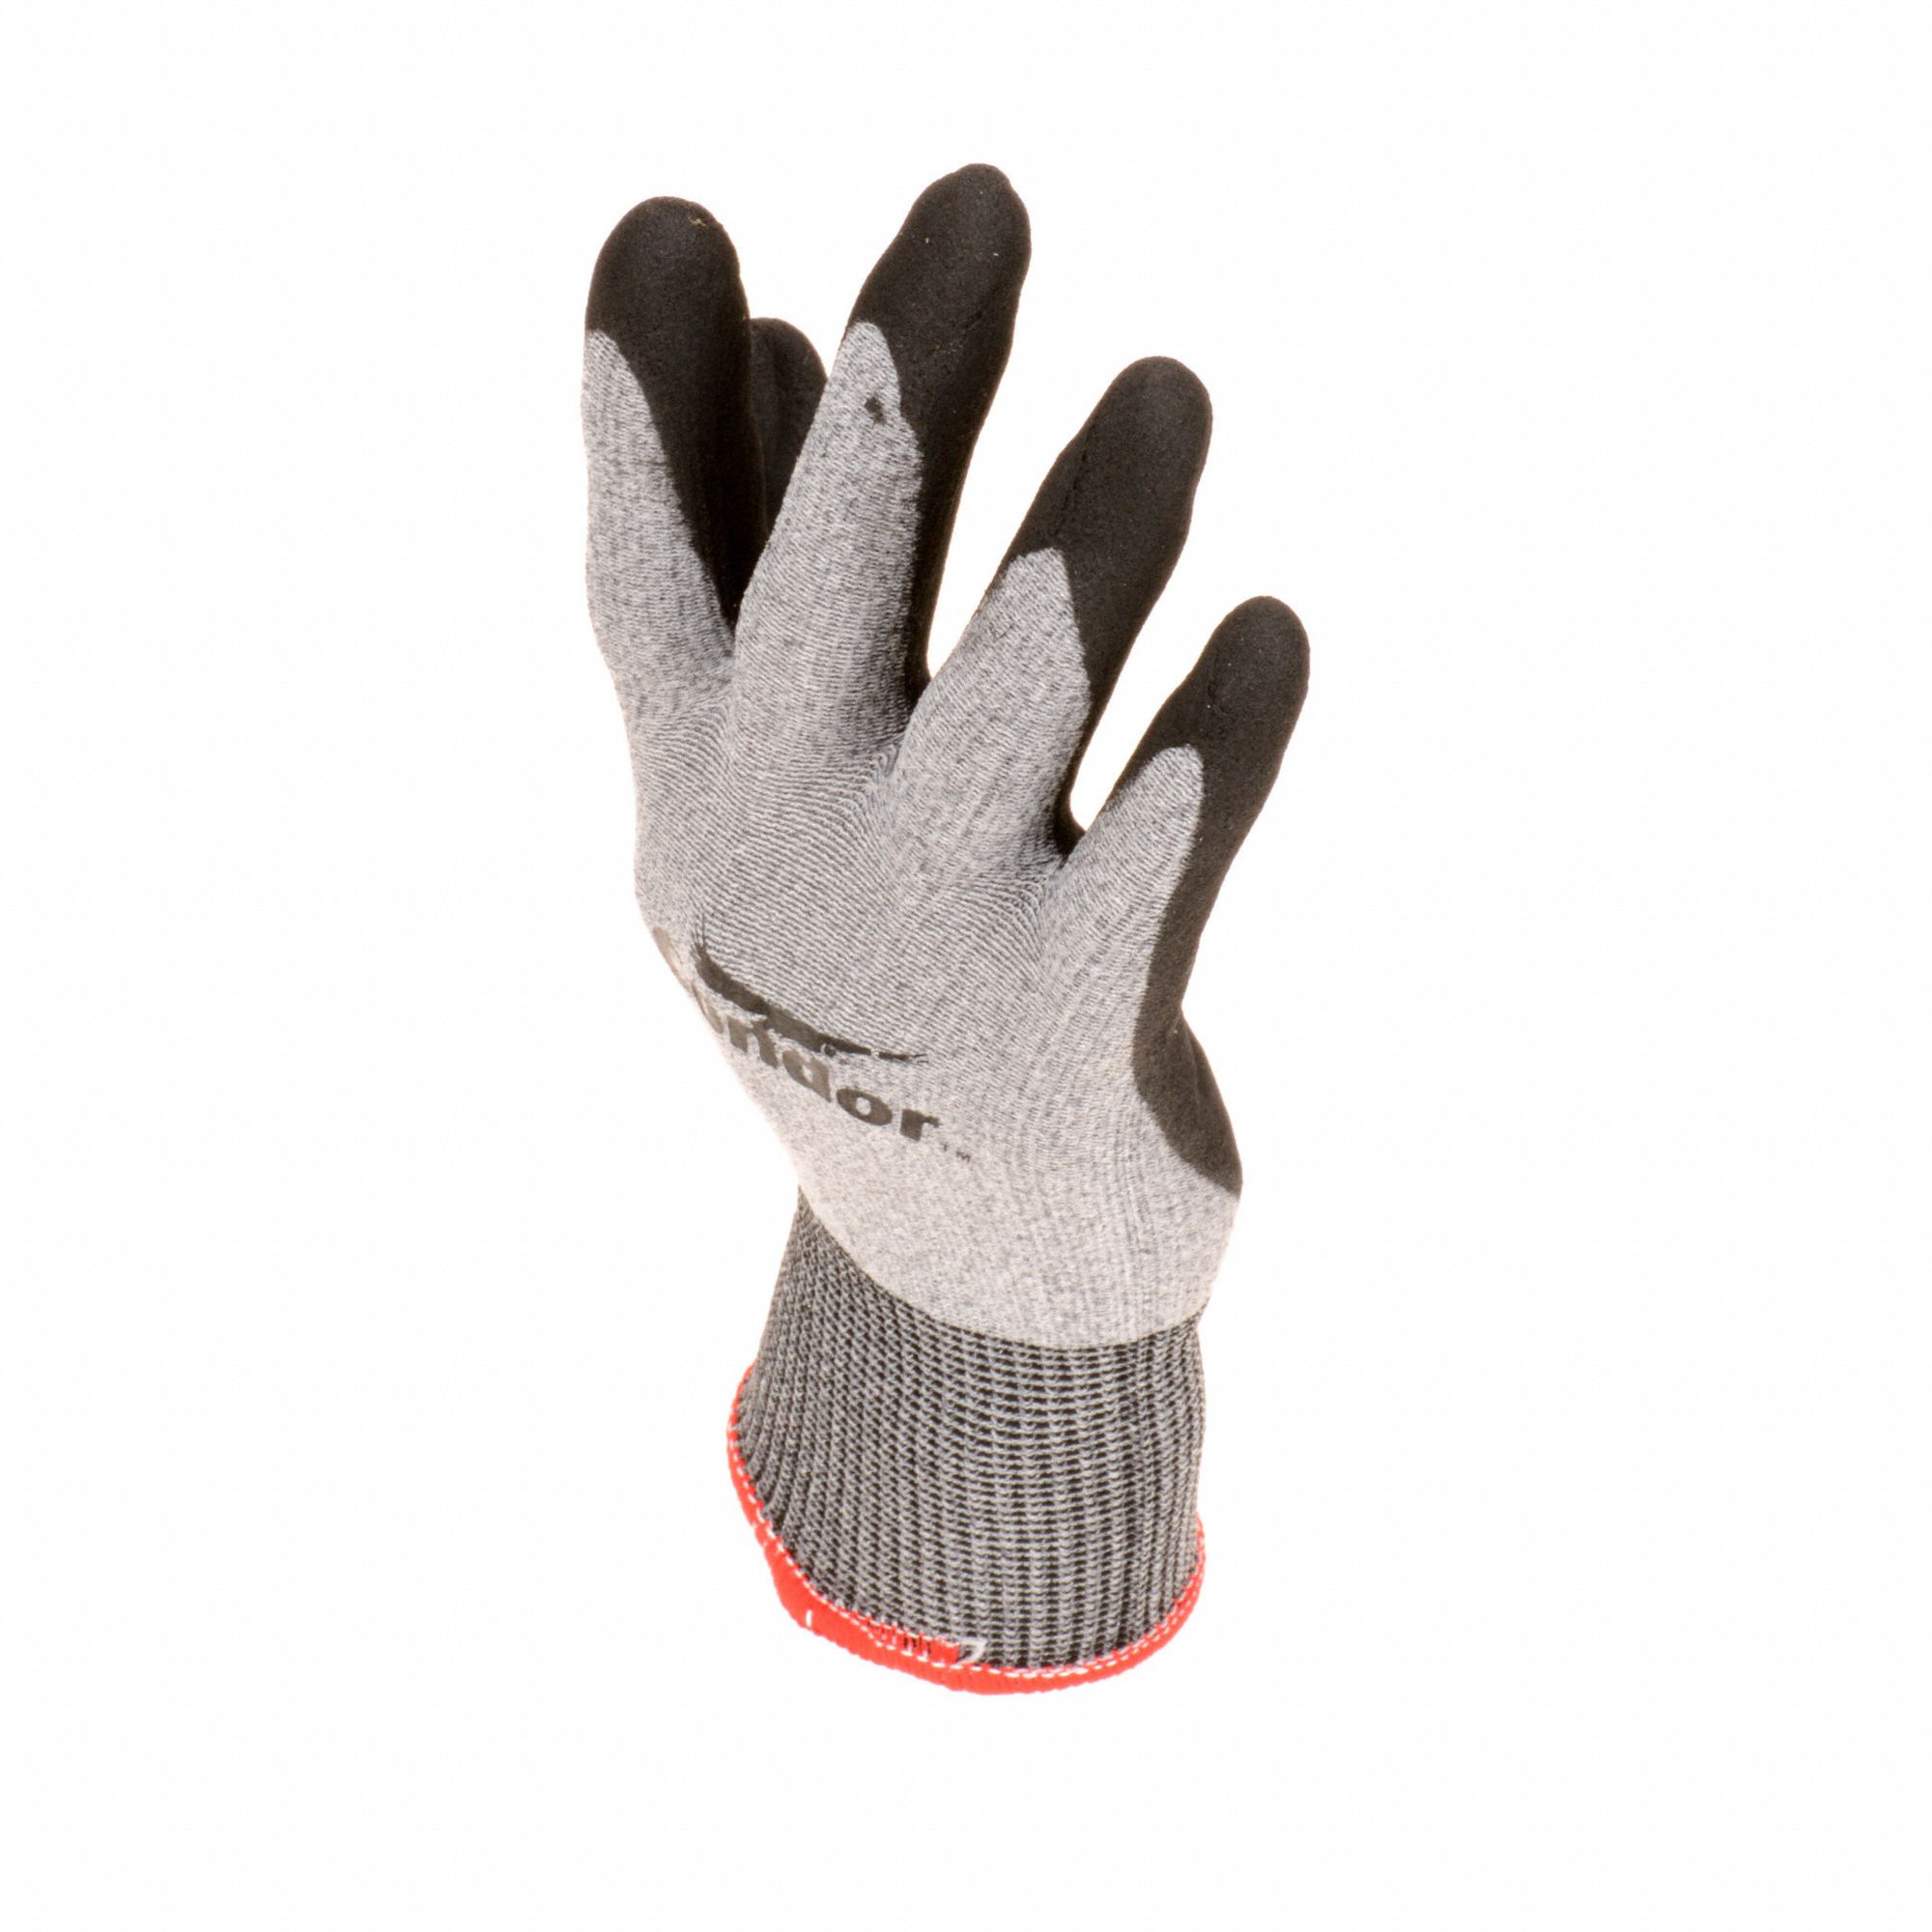 CONDOR, XL ( 10 ), Foam, Coated Gloves - 19K978|19K978 - Grainger